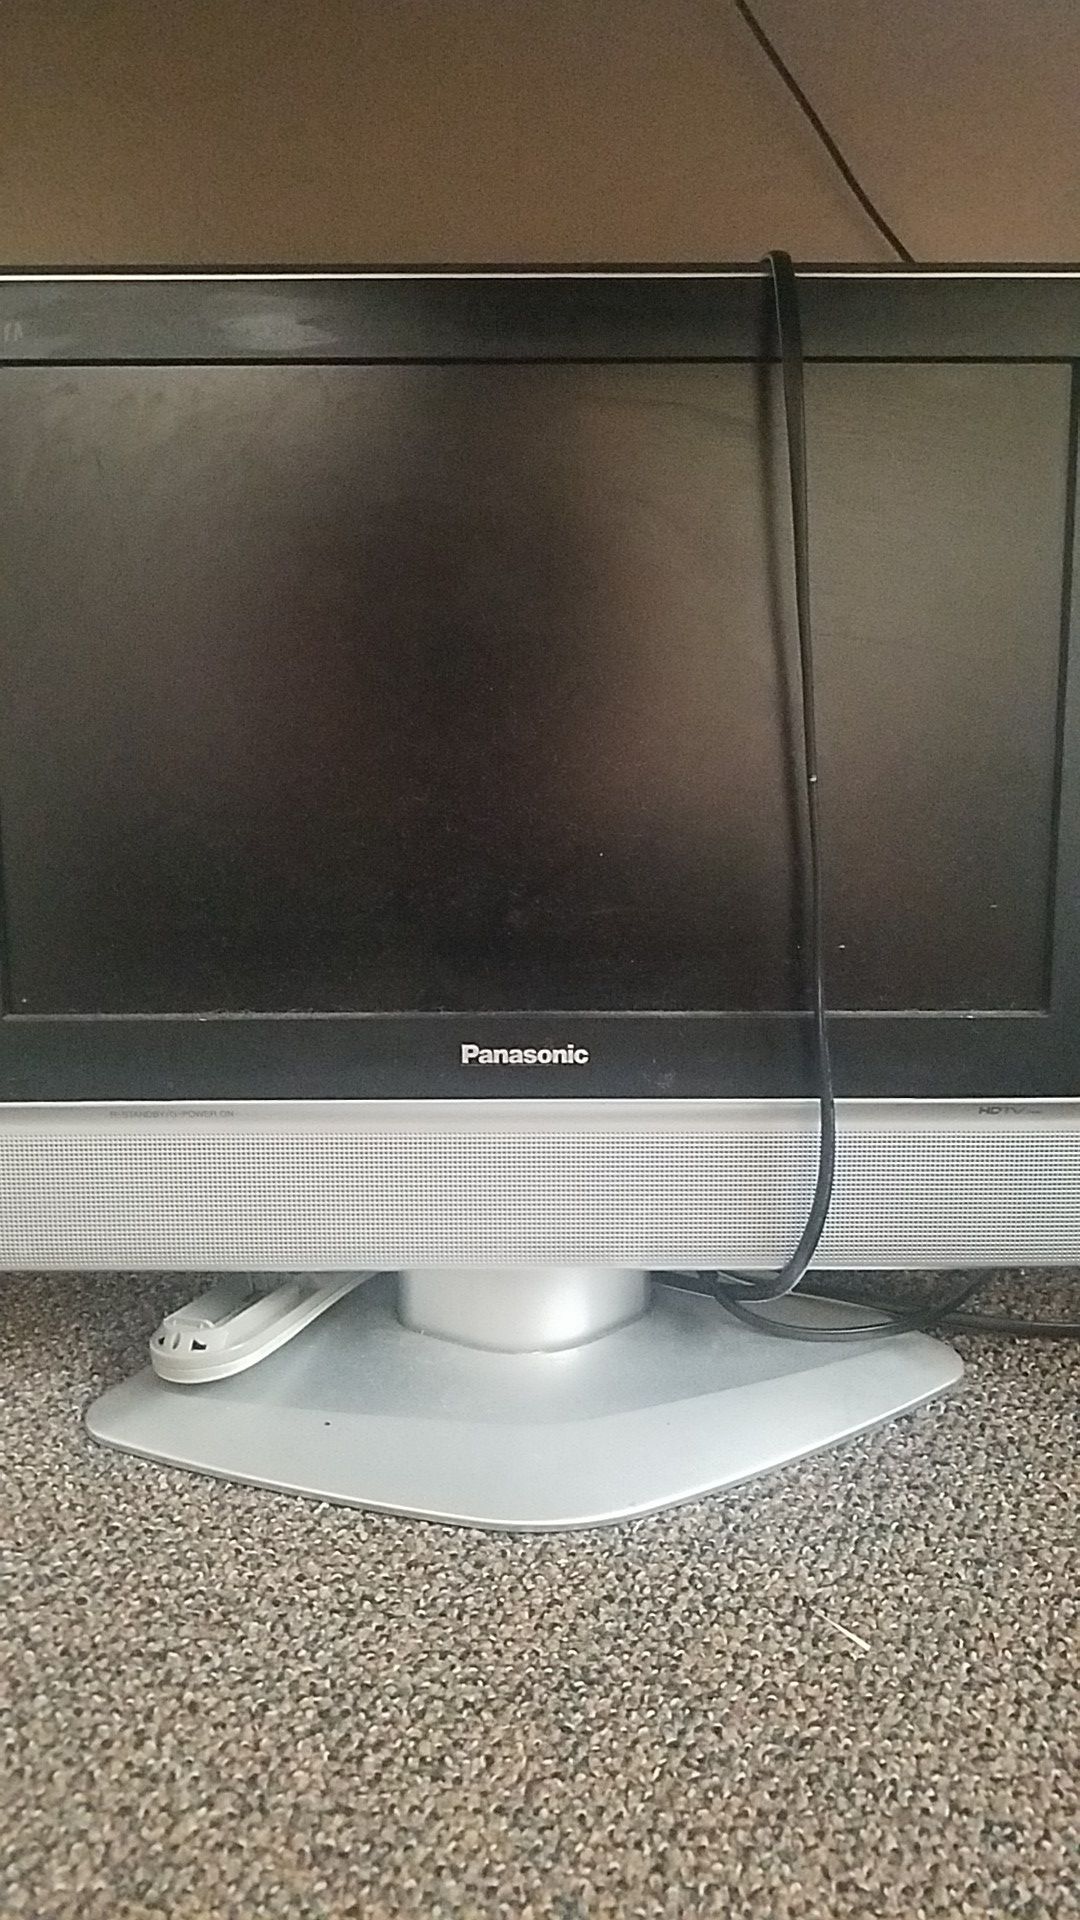 20" Panasonic Flat screen TV